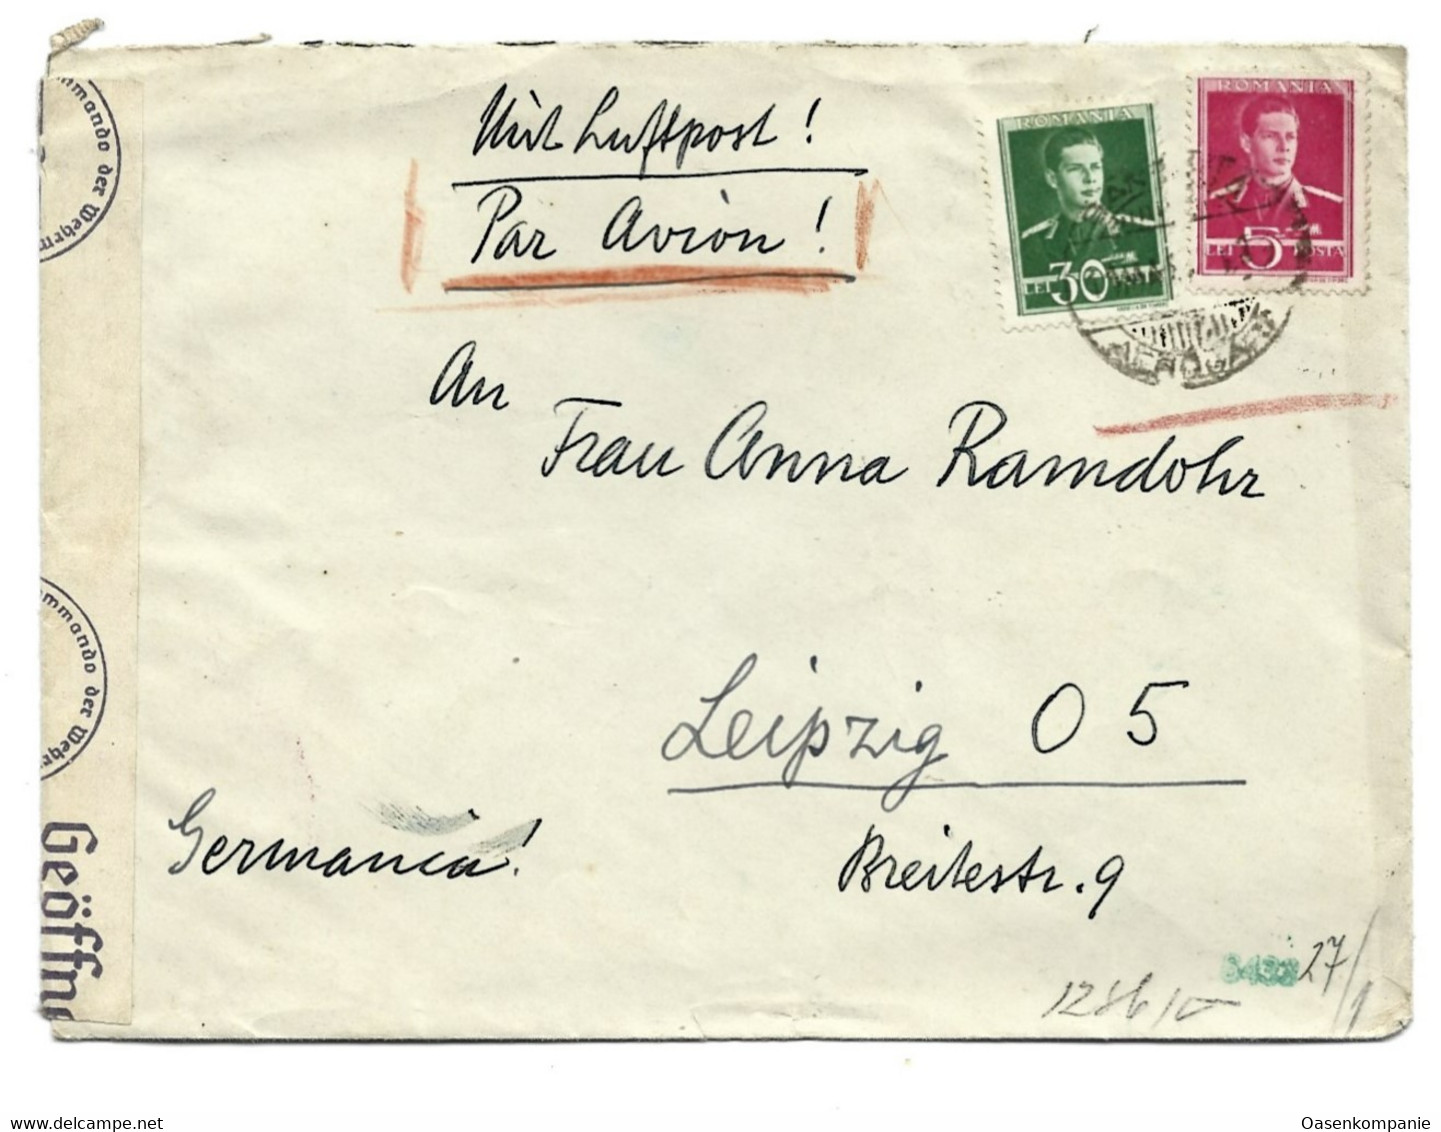 Luftpost Rumänien Bukarest Leipzig Zensur 1943 - 2de Wereldoorlog (Brieven)